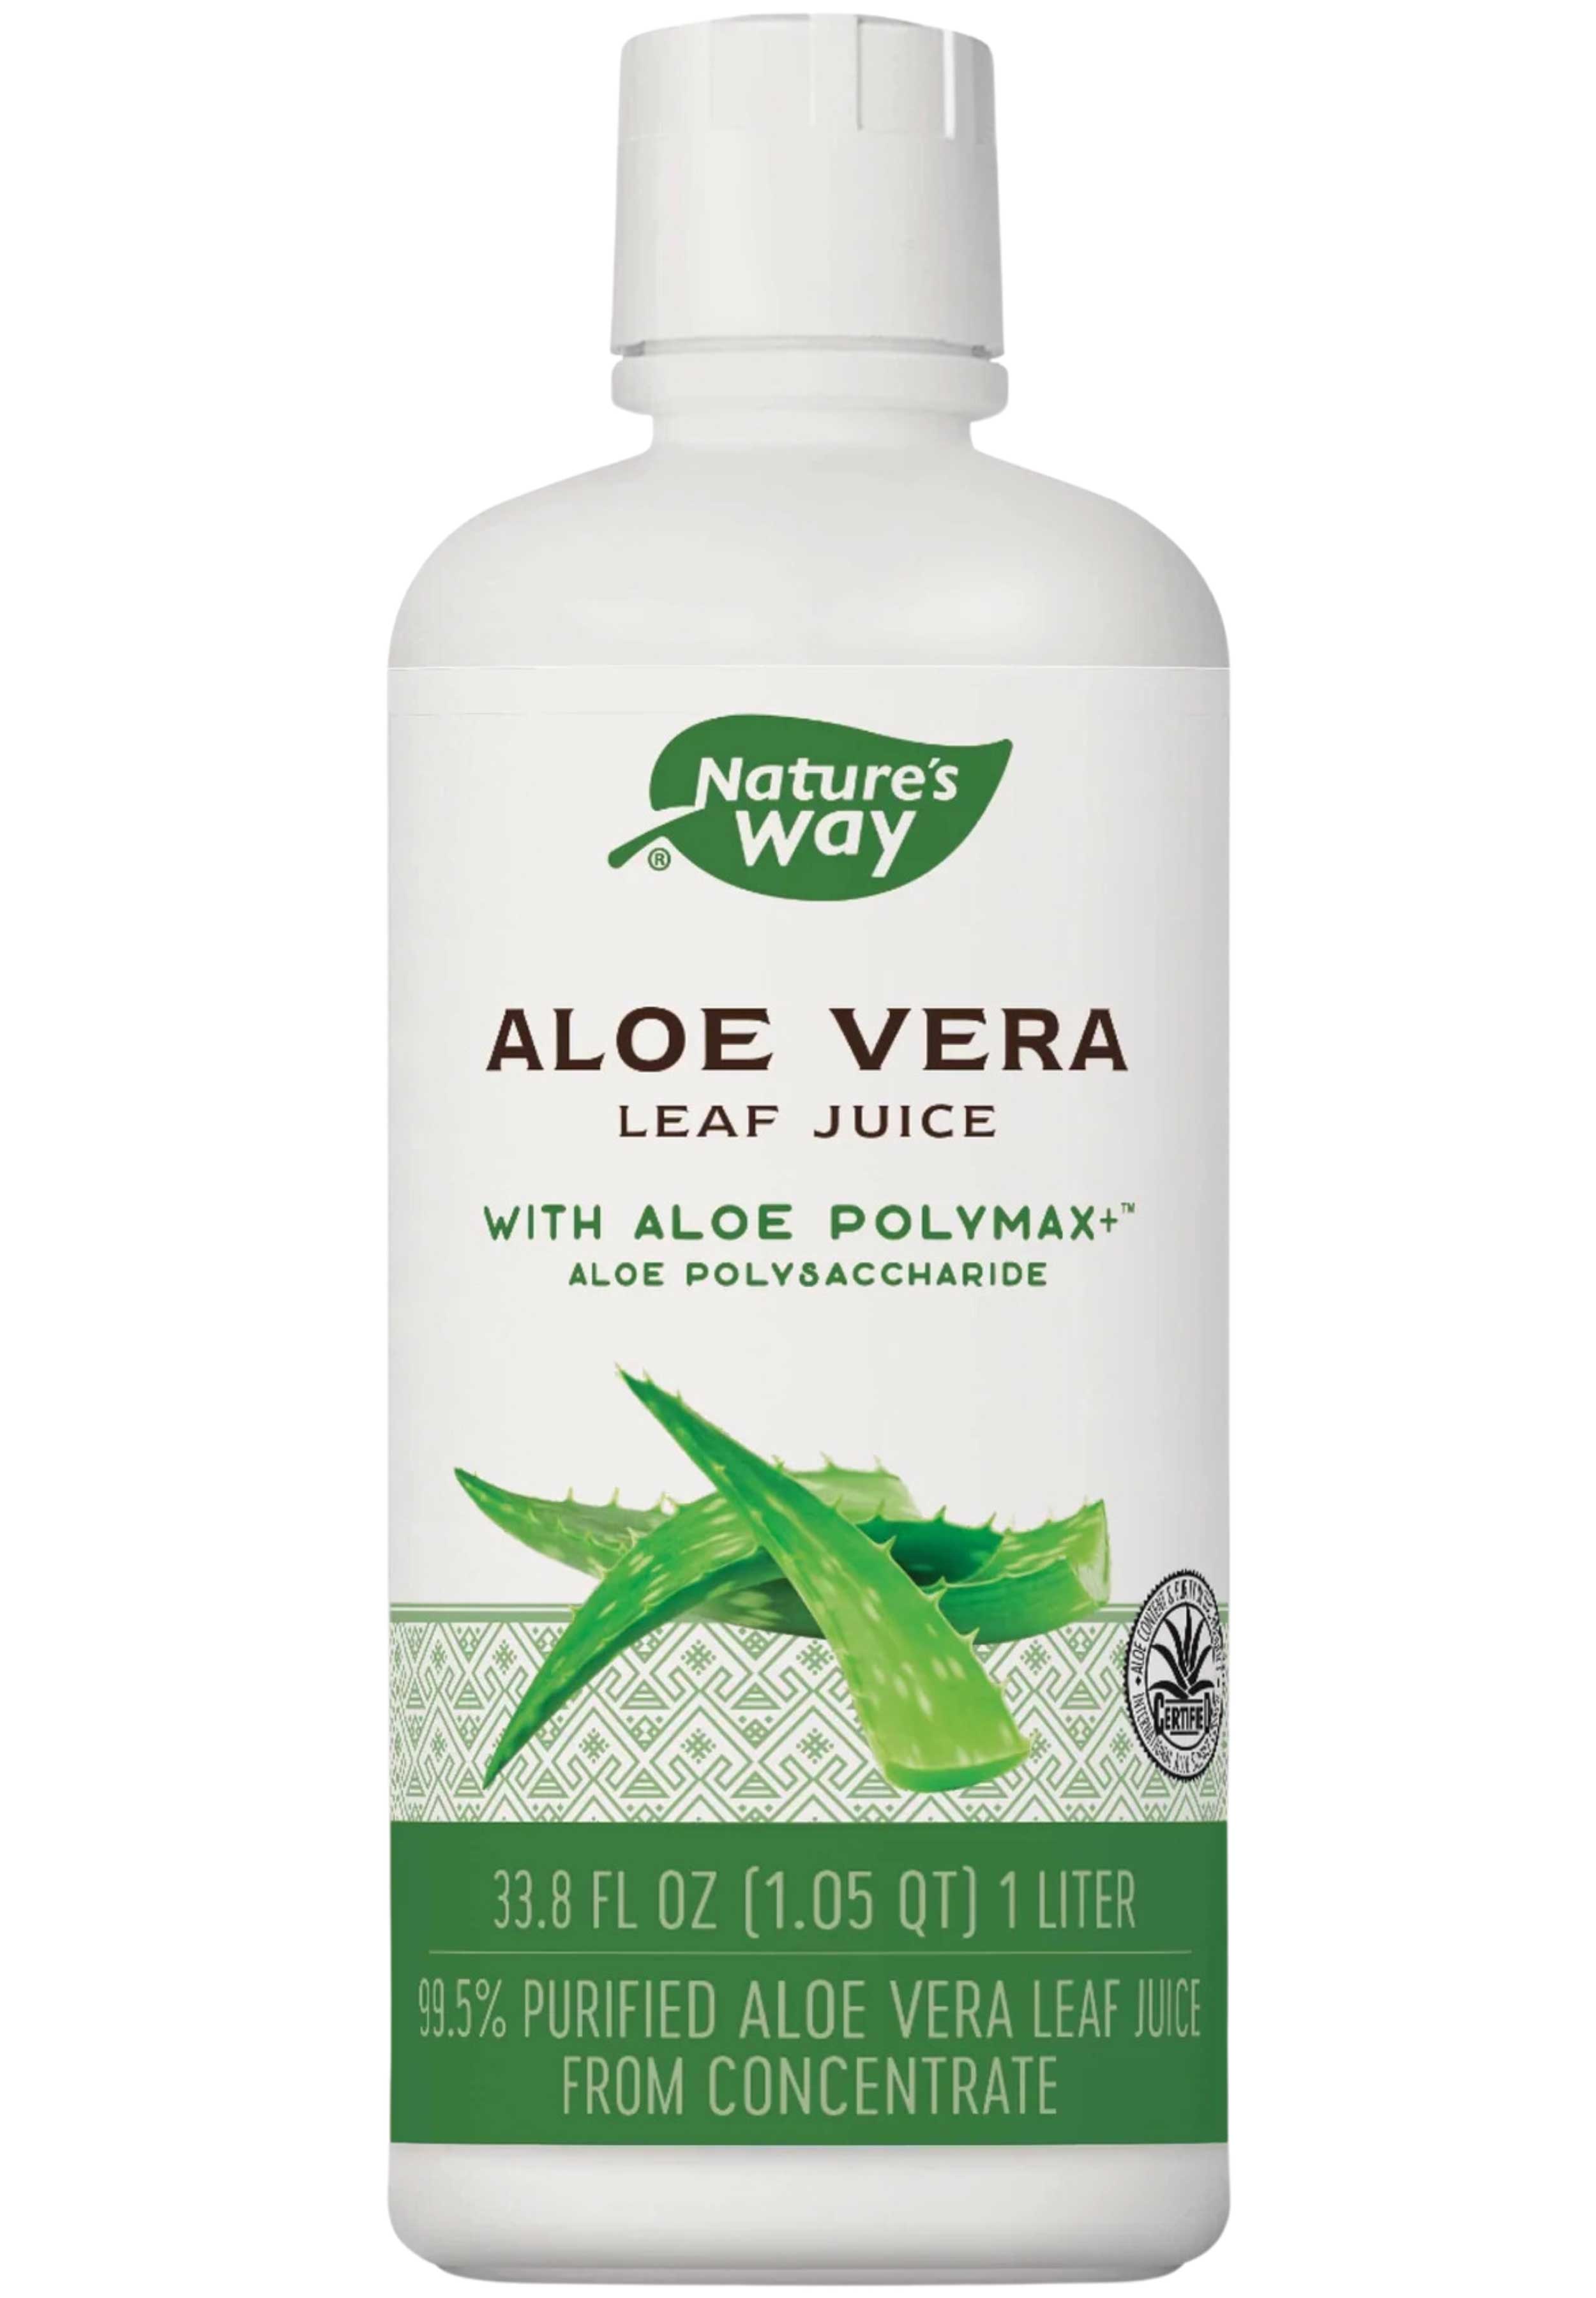 Nature's Way Aloe Vera Leaf Juice